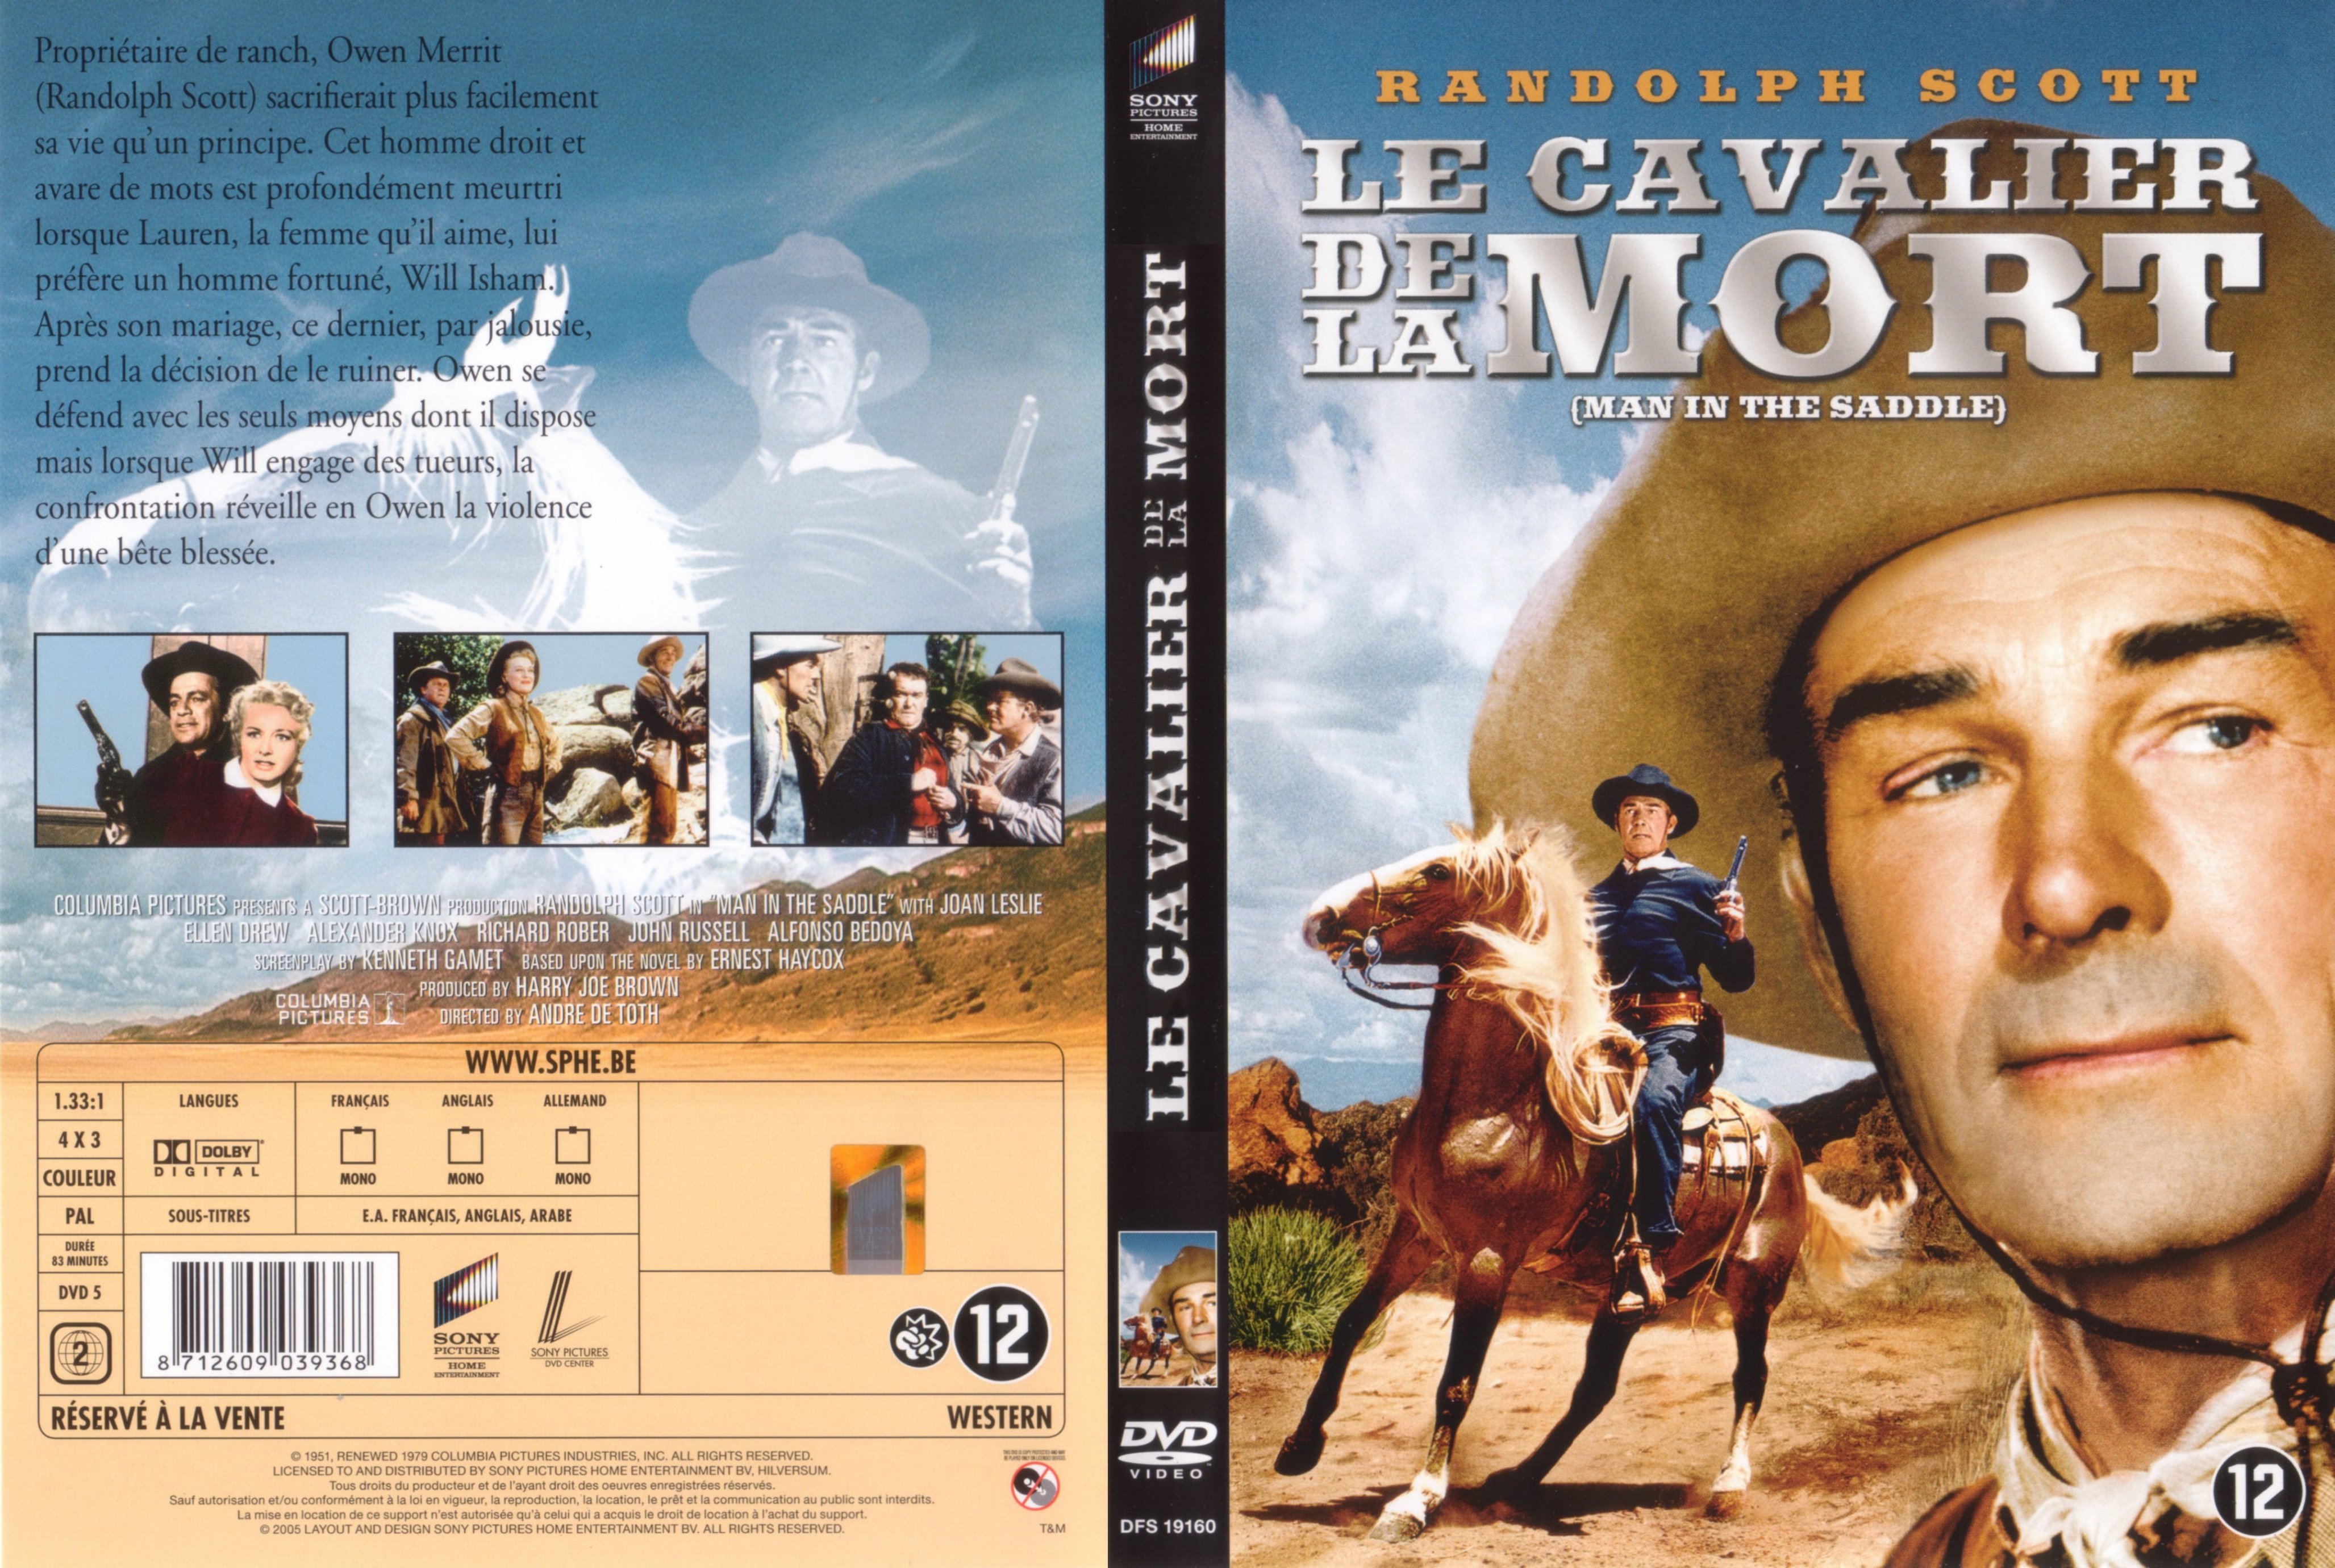 Jaquette DVD Le cavalier de la mort v2